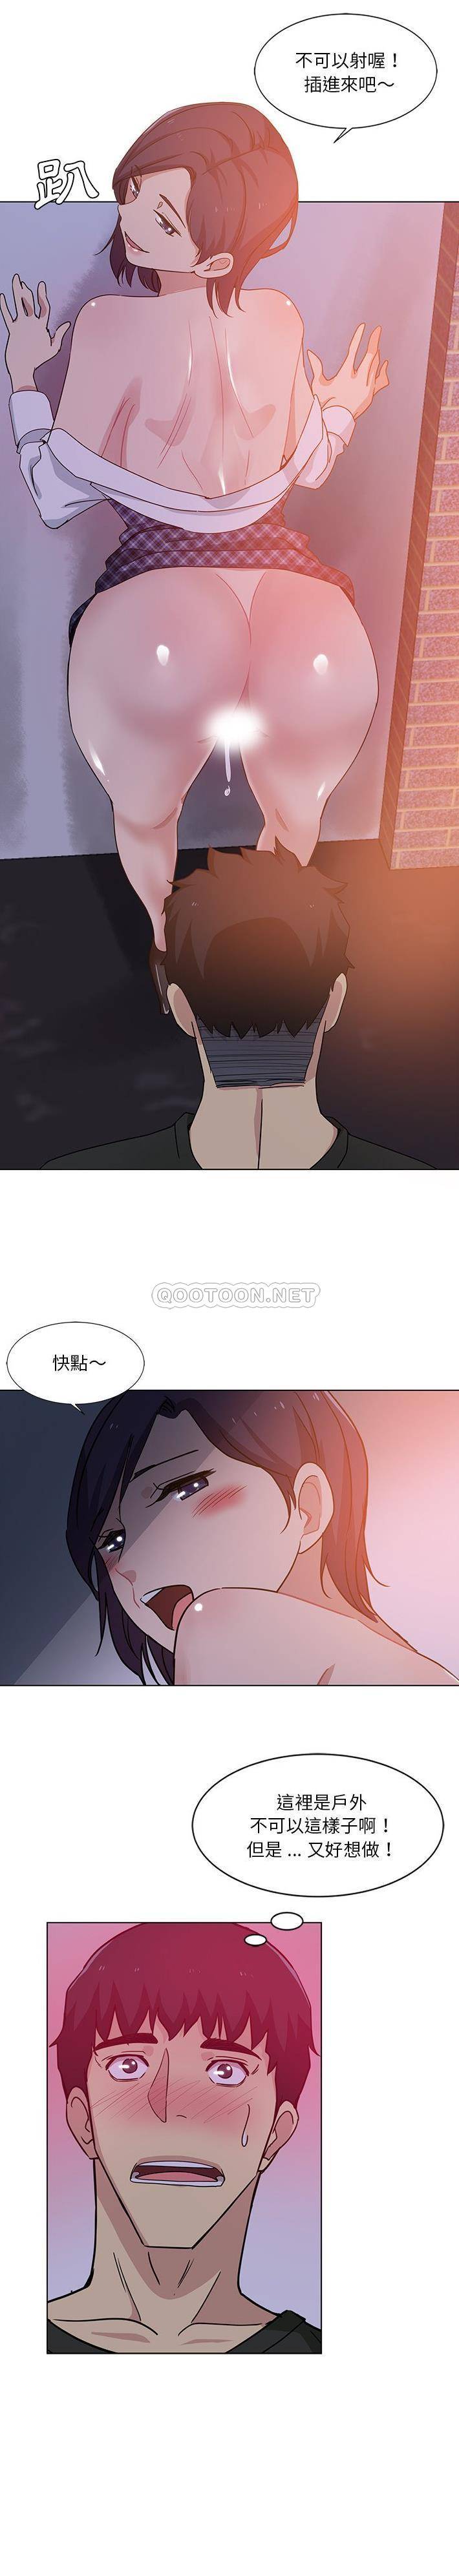 韩国污漫画 危險純友誼 第4话 13